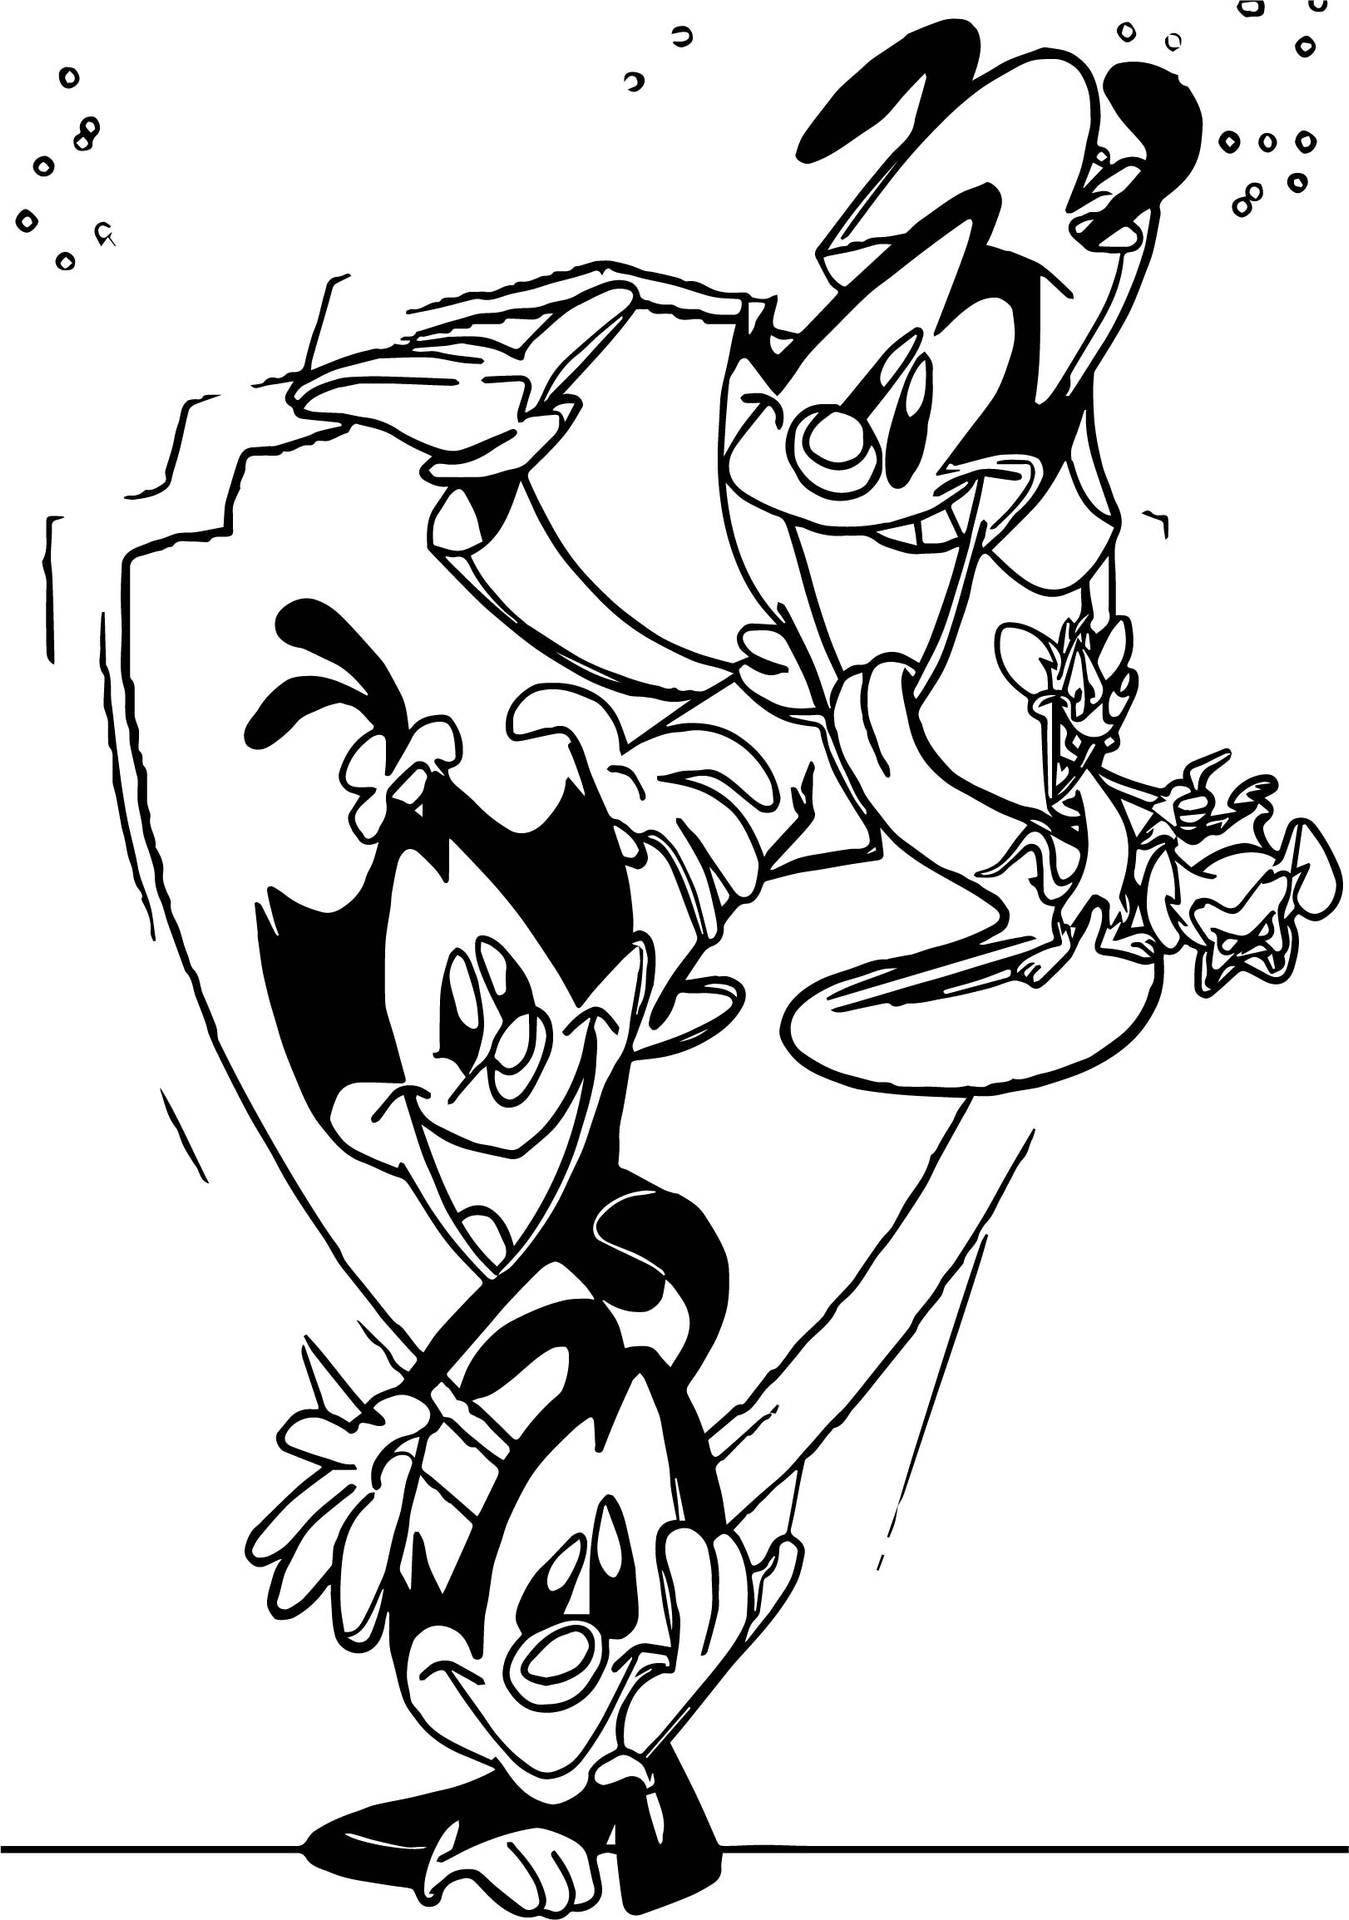 Animaniacs' Warner Siblings Sketch Art Background